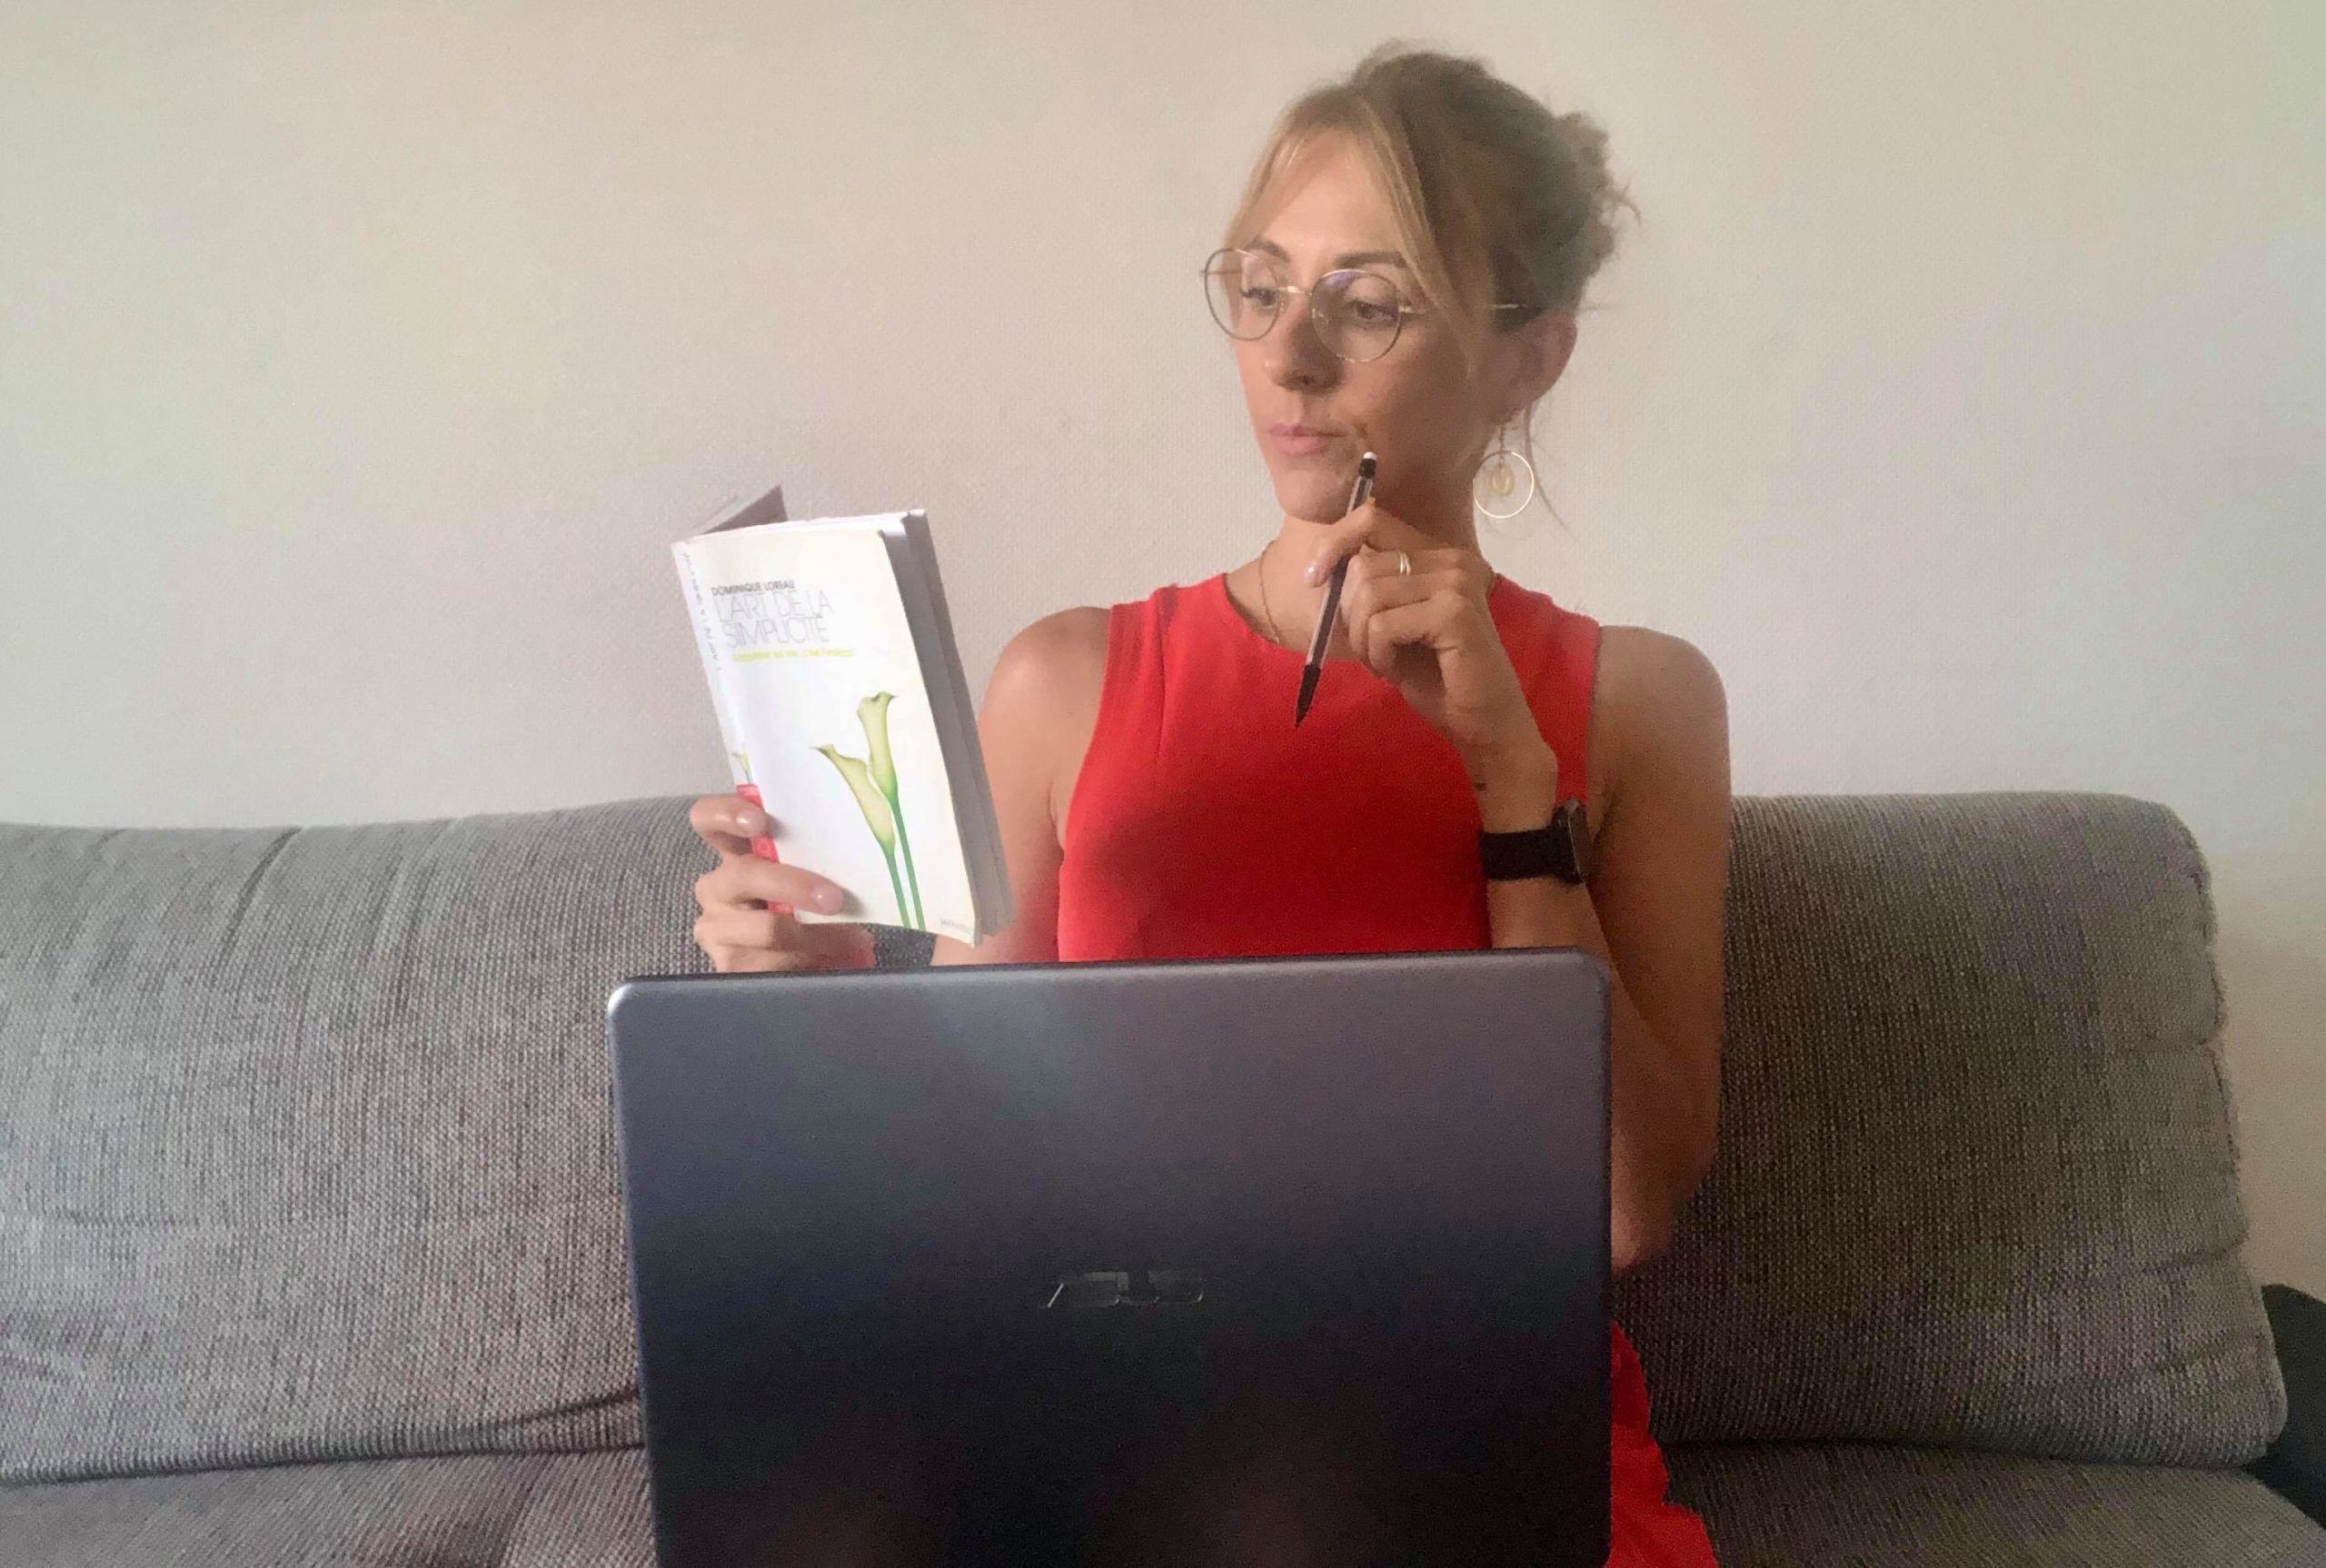 femme blonde avec des lunettes lisant un livre et travaillant sur le pc en même temps